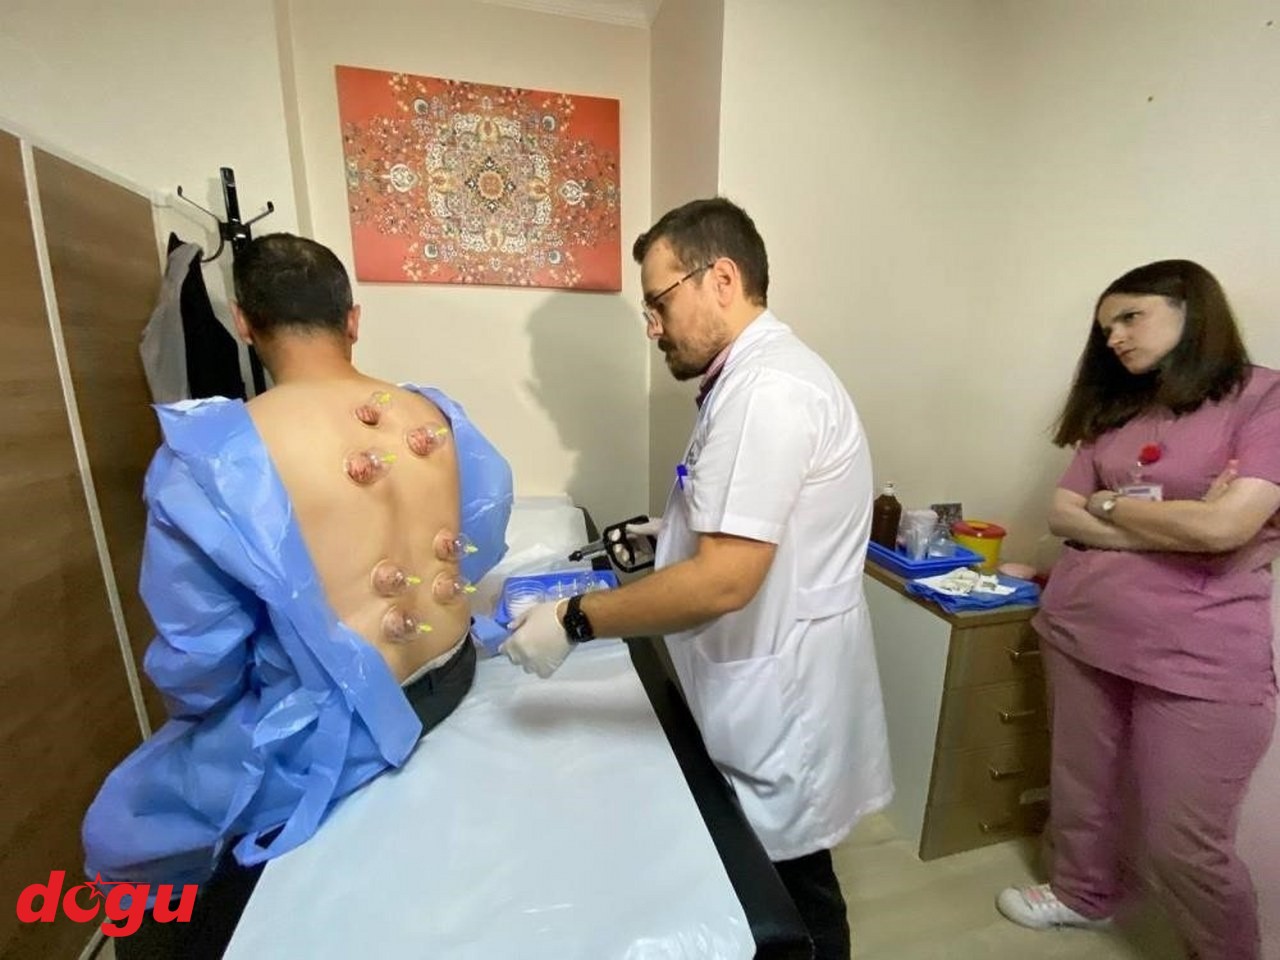 Hastalar Erzincan'da ozon terapi, hacamat ve sülük tedavisi ile şifa buluyor (3)_1280x960